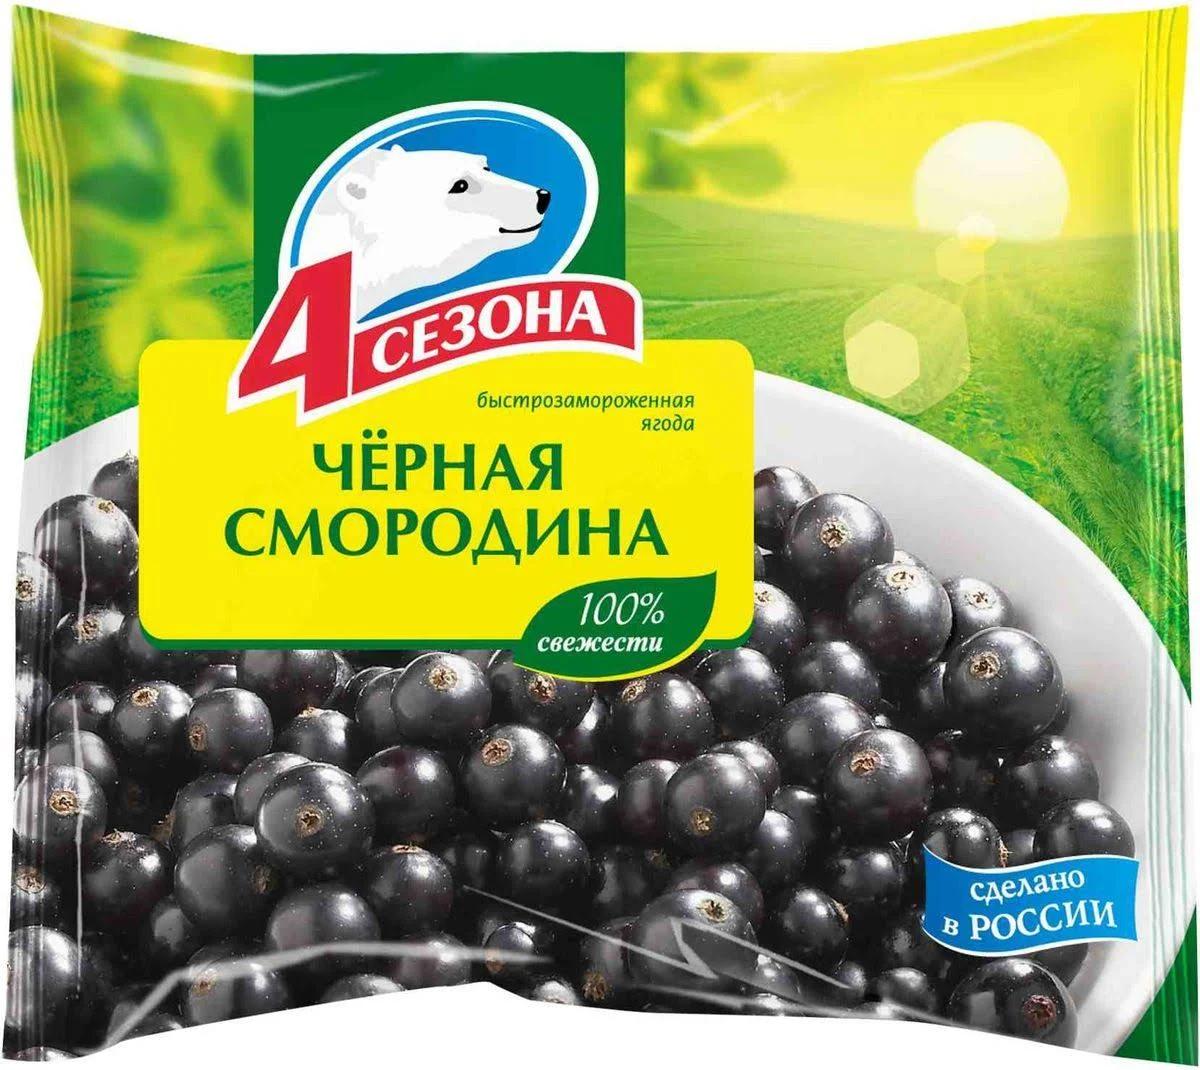 Смородина черная 4 Сезона замороженная 300 гр., флоу-пак